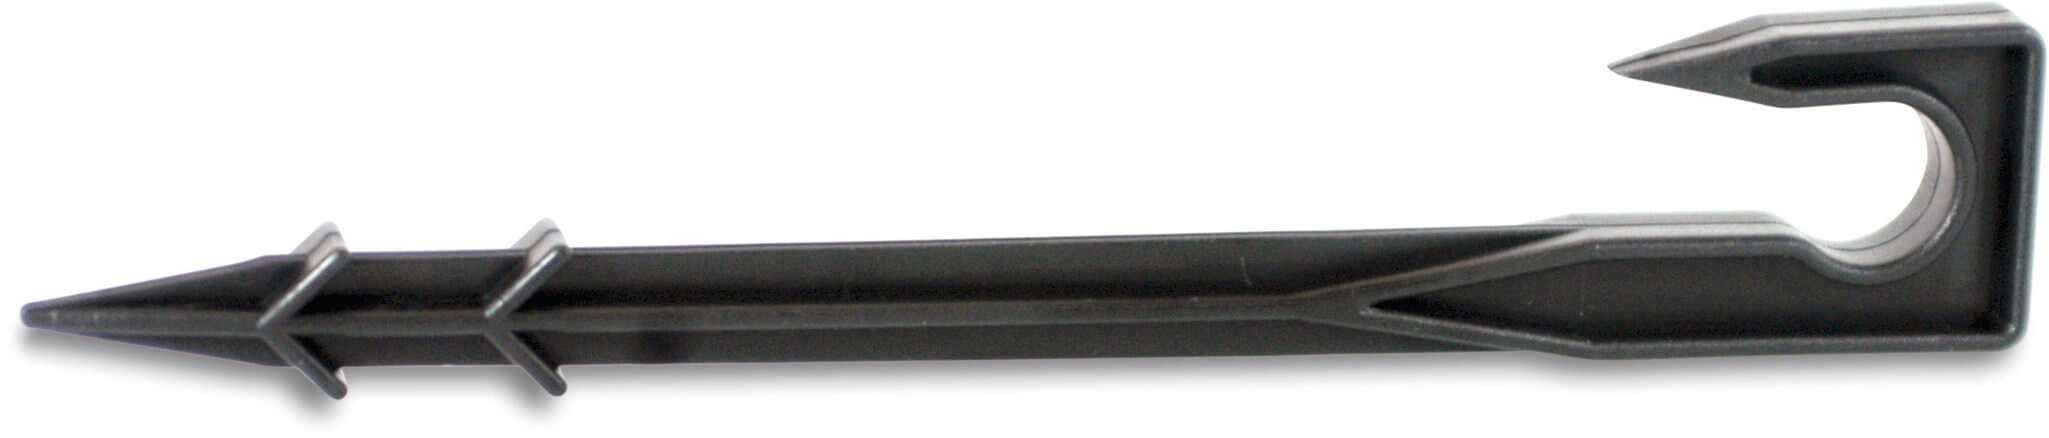 Forankringsholder til rør plastik 16-20 mm sort